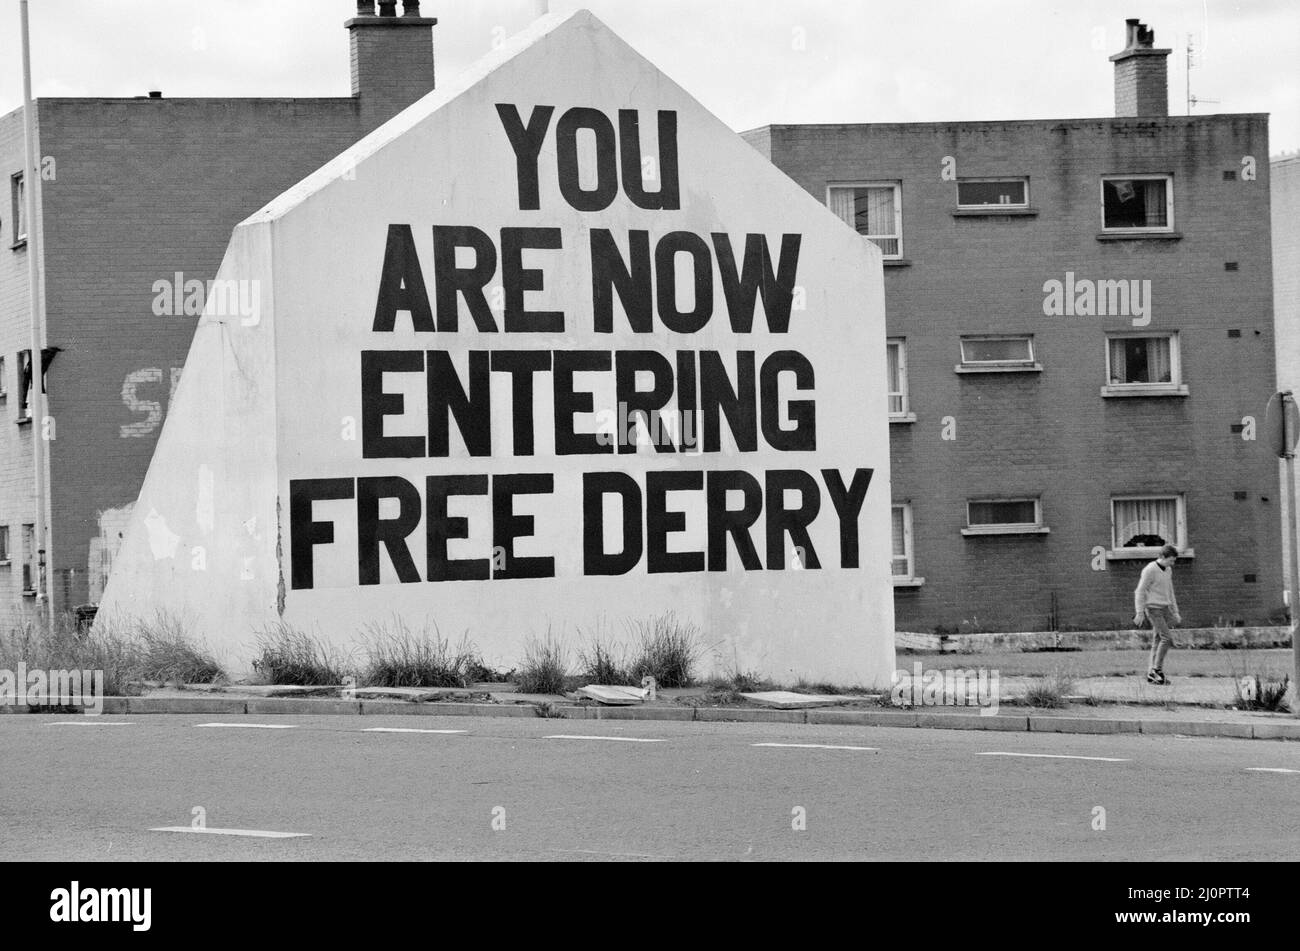 Free Derry Corner, punto di riferimento nel quartiere Bogside di Derry, Irlanda del Nord, che si trova all'incrocio tra Lecky Road, Rossville Street e Fahan Street. Londonderry, Irlanda del Nord, 8th marzo 1984. Segno sul muro, SI STA ORA ENTRANDO LIBERO DERRY. Foto Stock